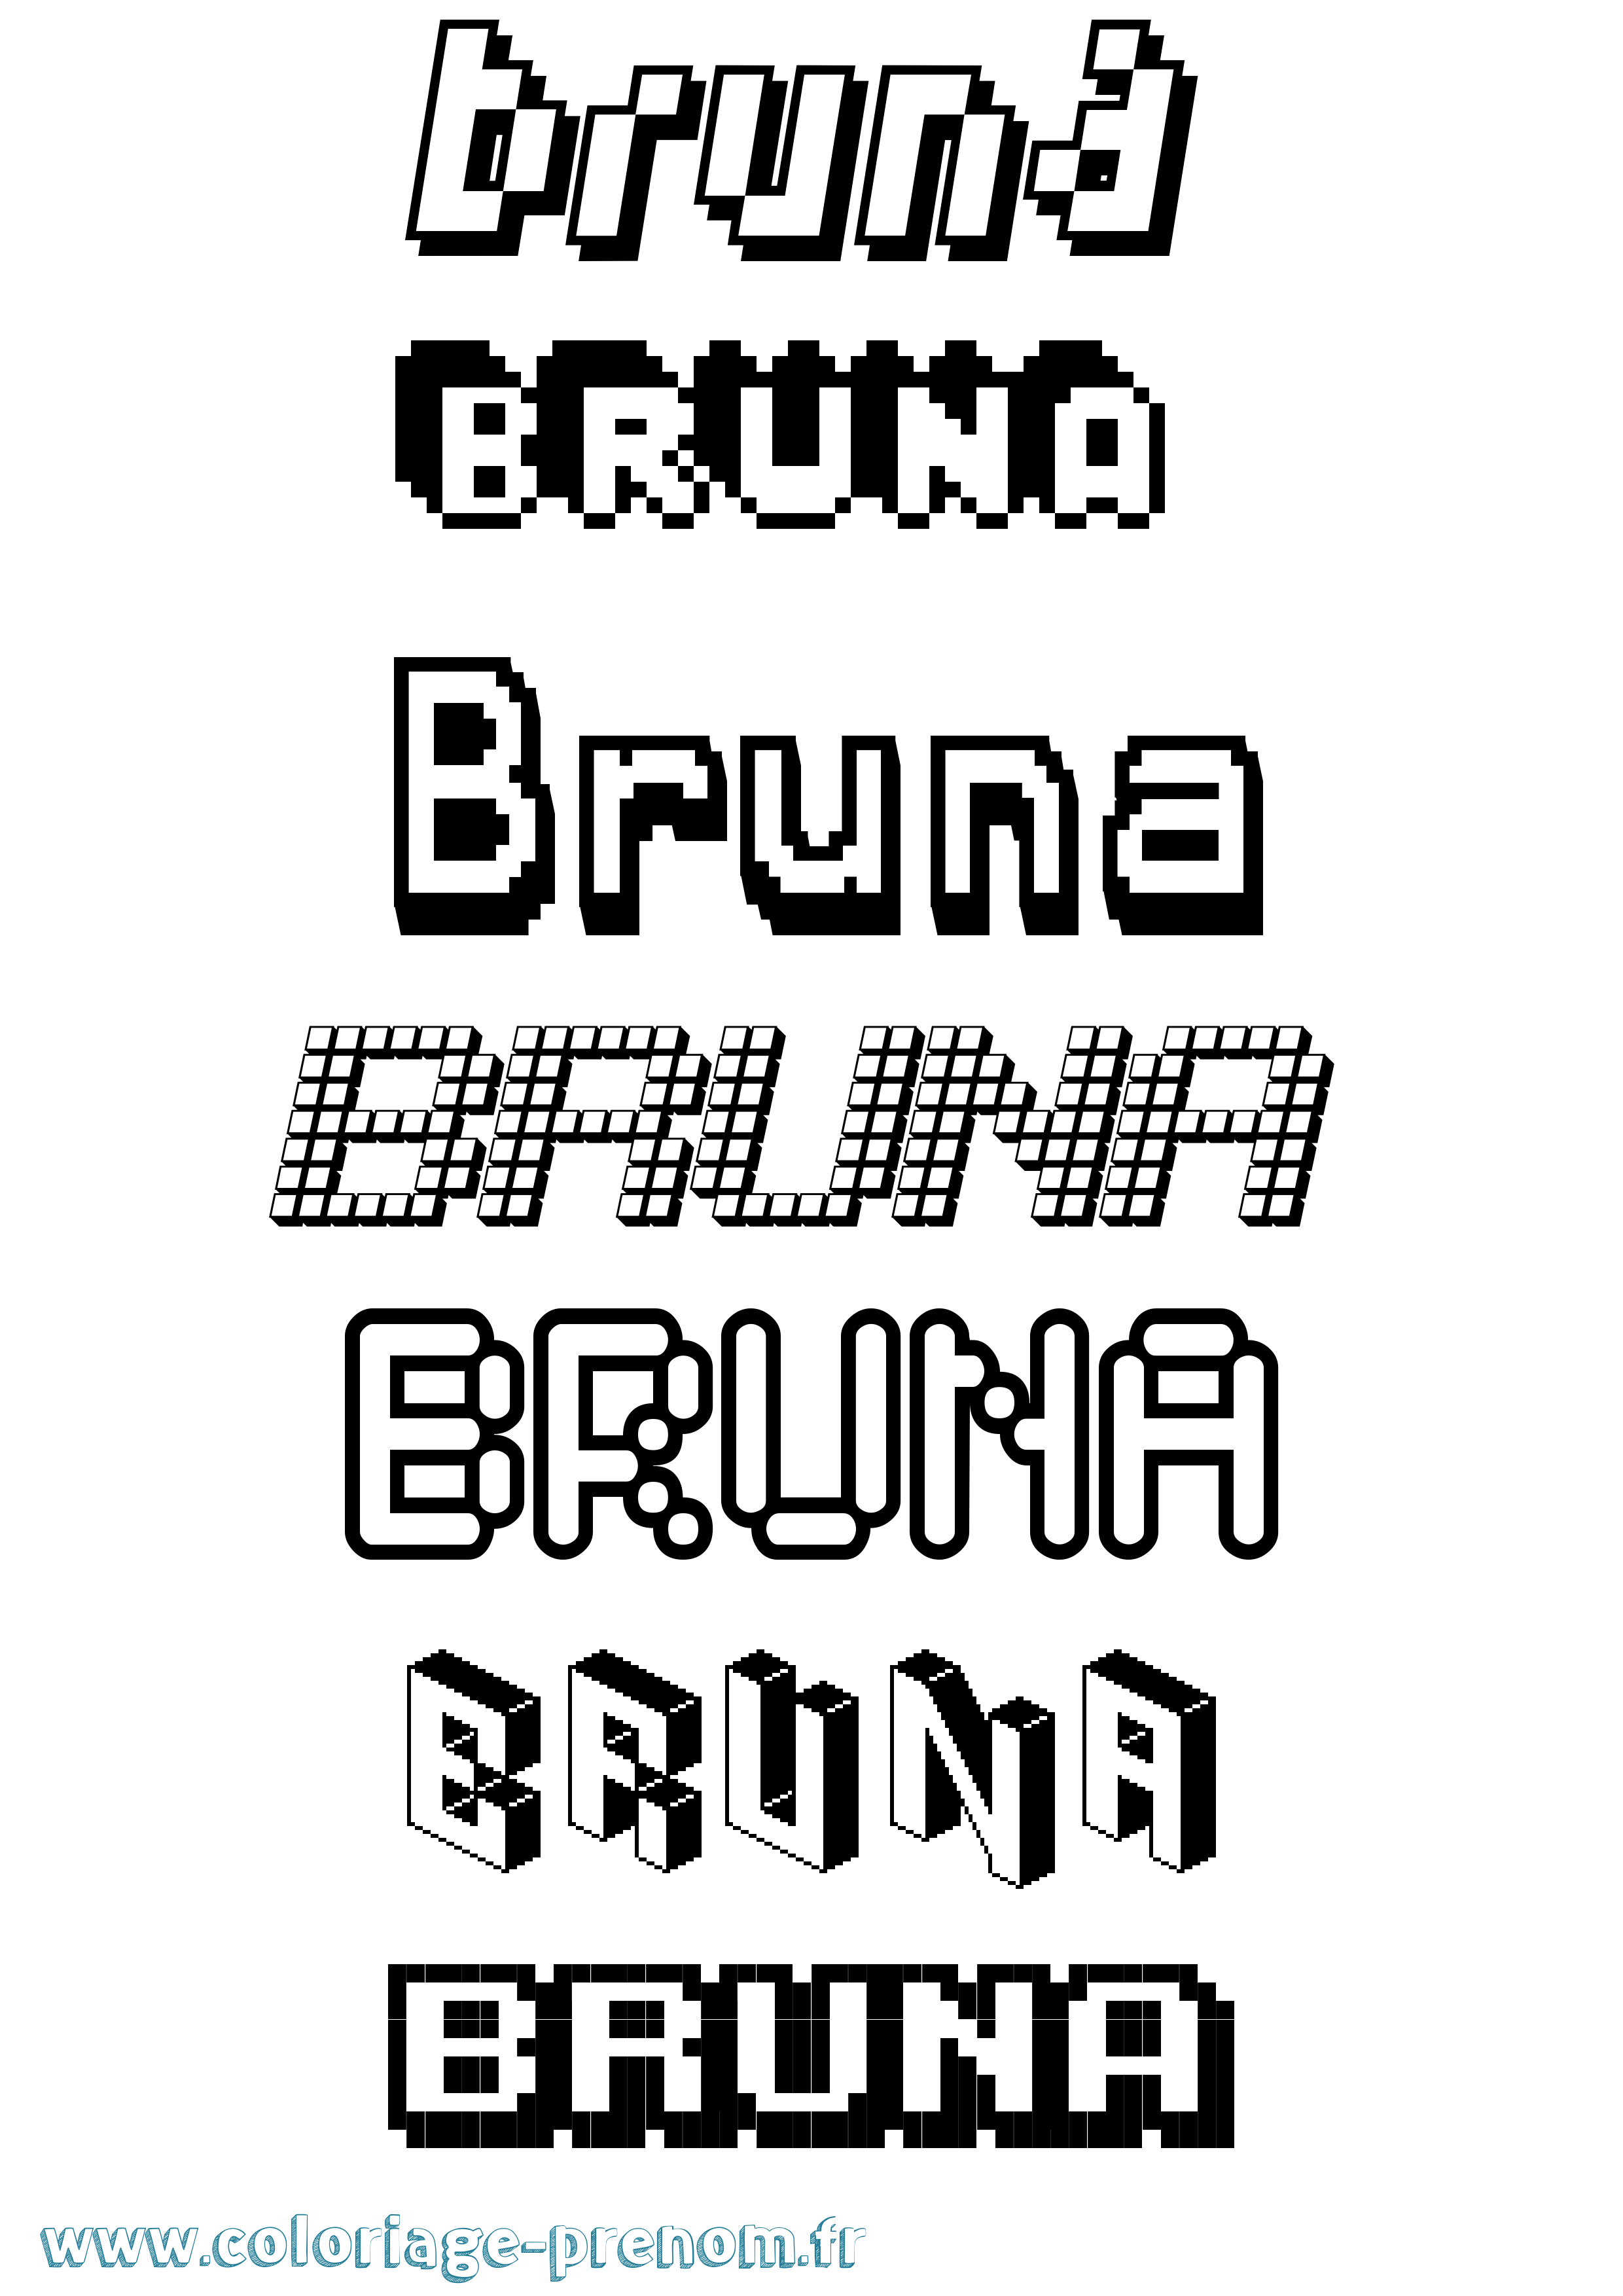 Coloriage prénom Bruna Pixel